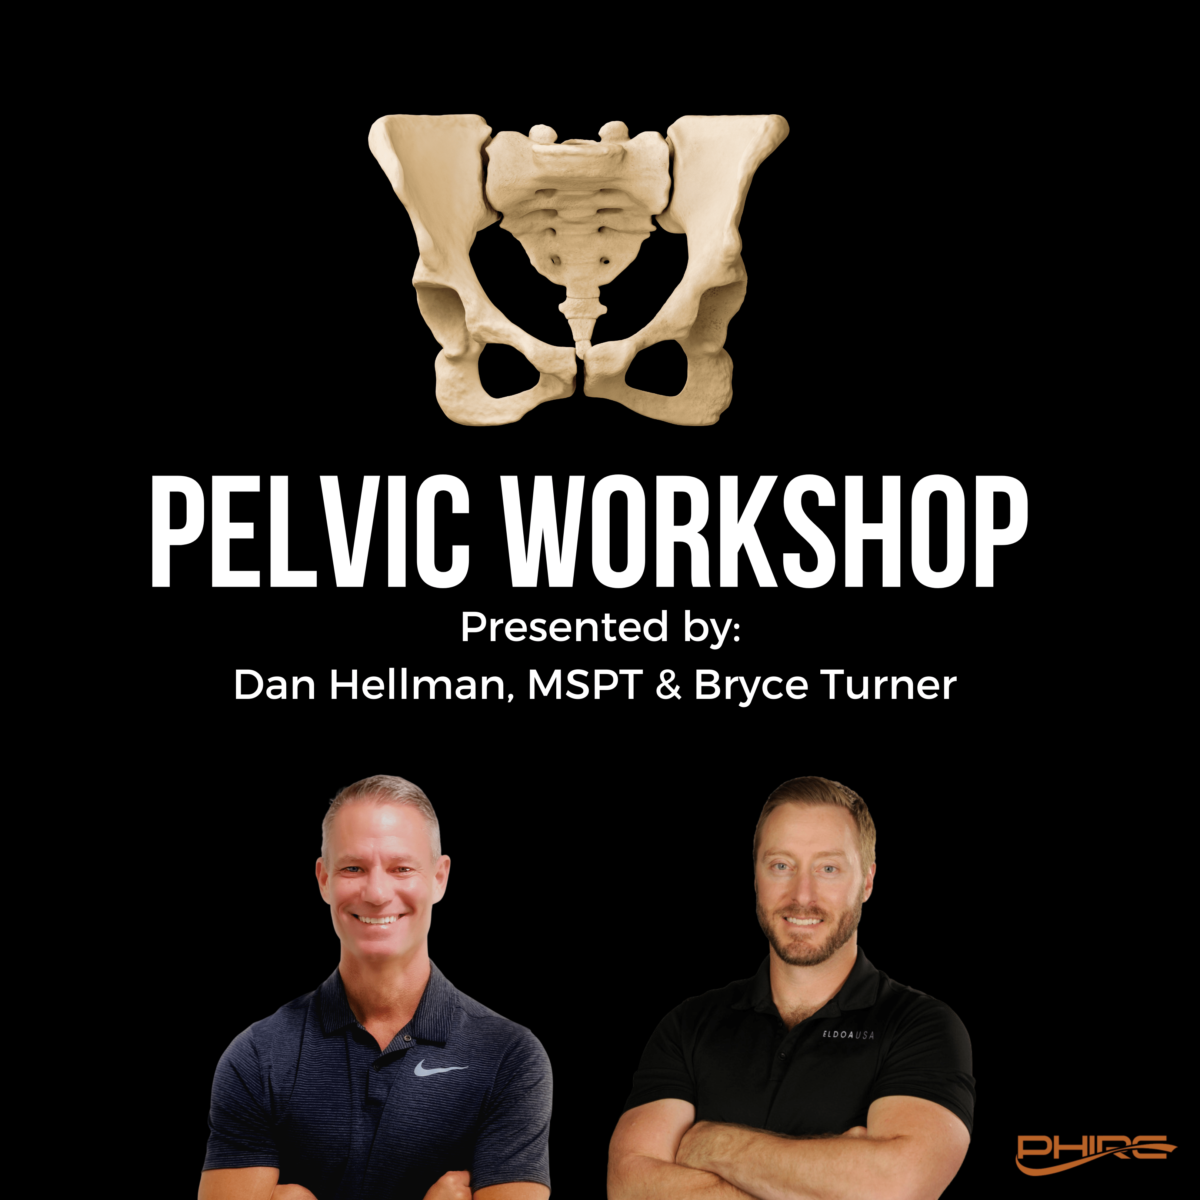 The Pelvis Workshop